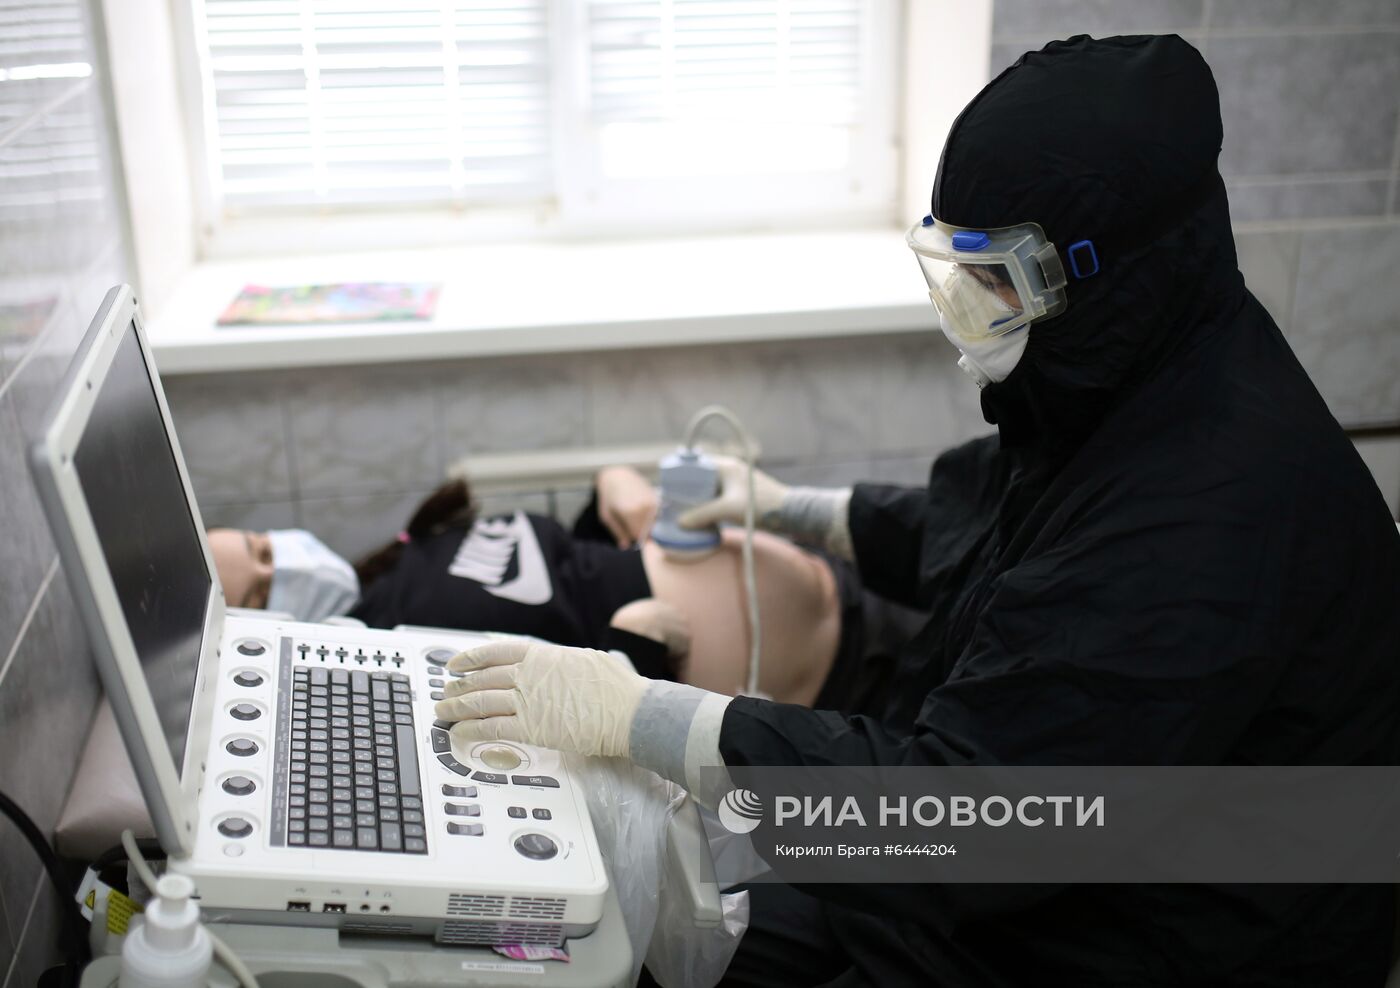 Рождение ребенка в "красной зоне" городской больницы Волгограда